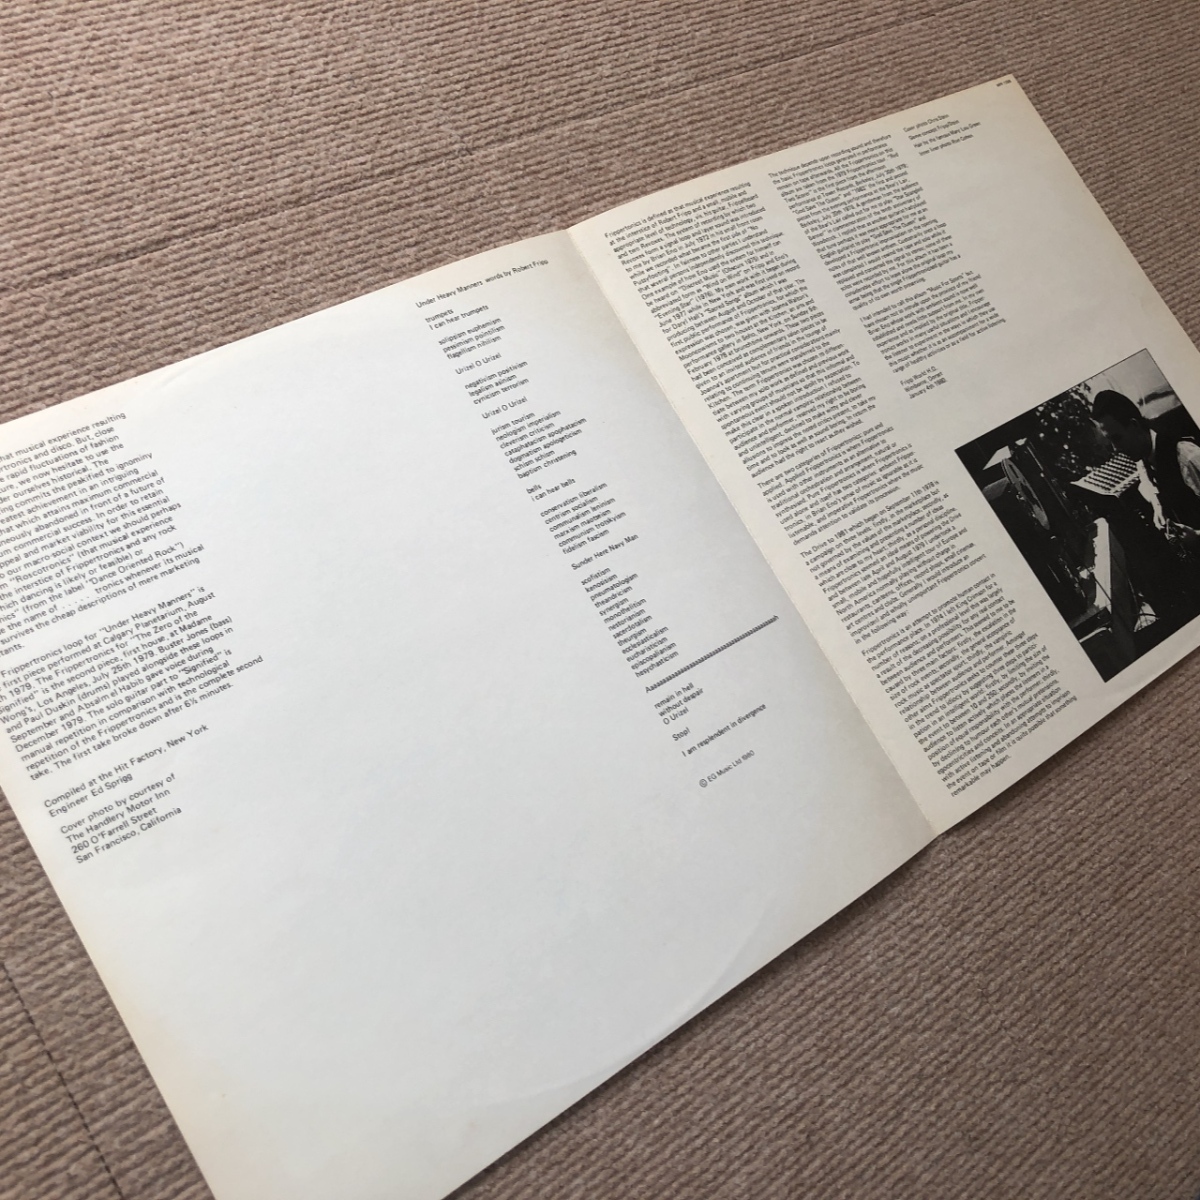  царапина нет прекрасный запись Robert *f "губа" Robert Fripp 1980 год LP запись God Save The Queen / Under Heavy Manners промо запись записано в Японии 